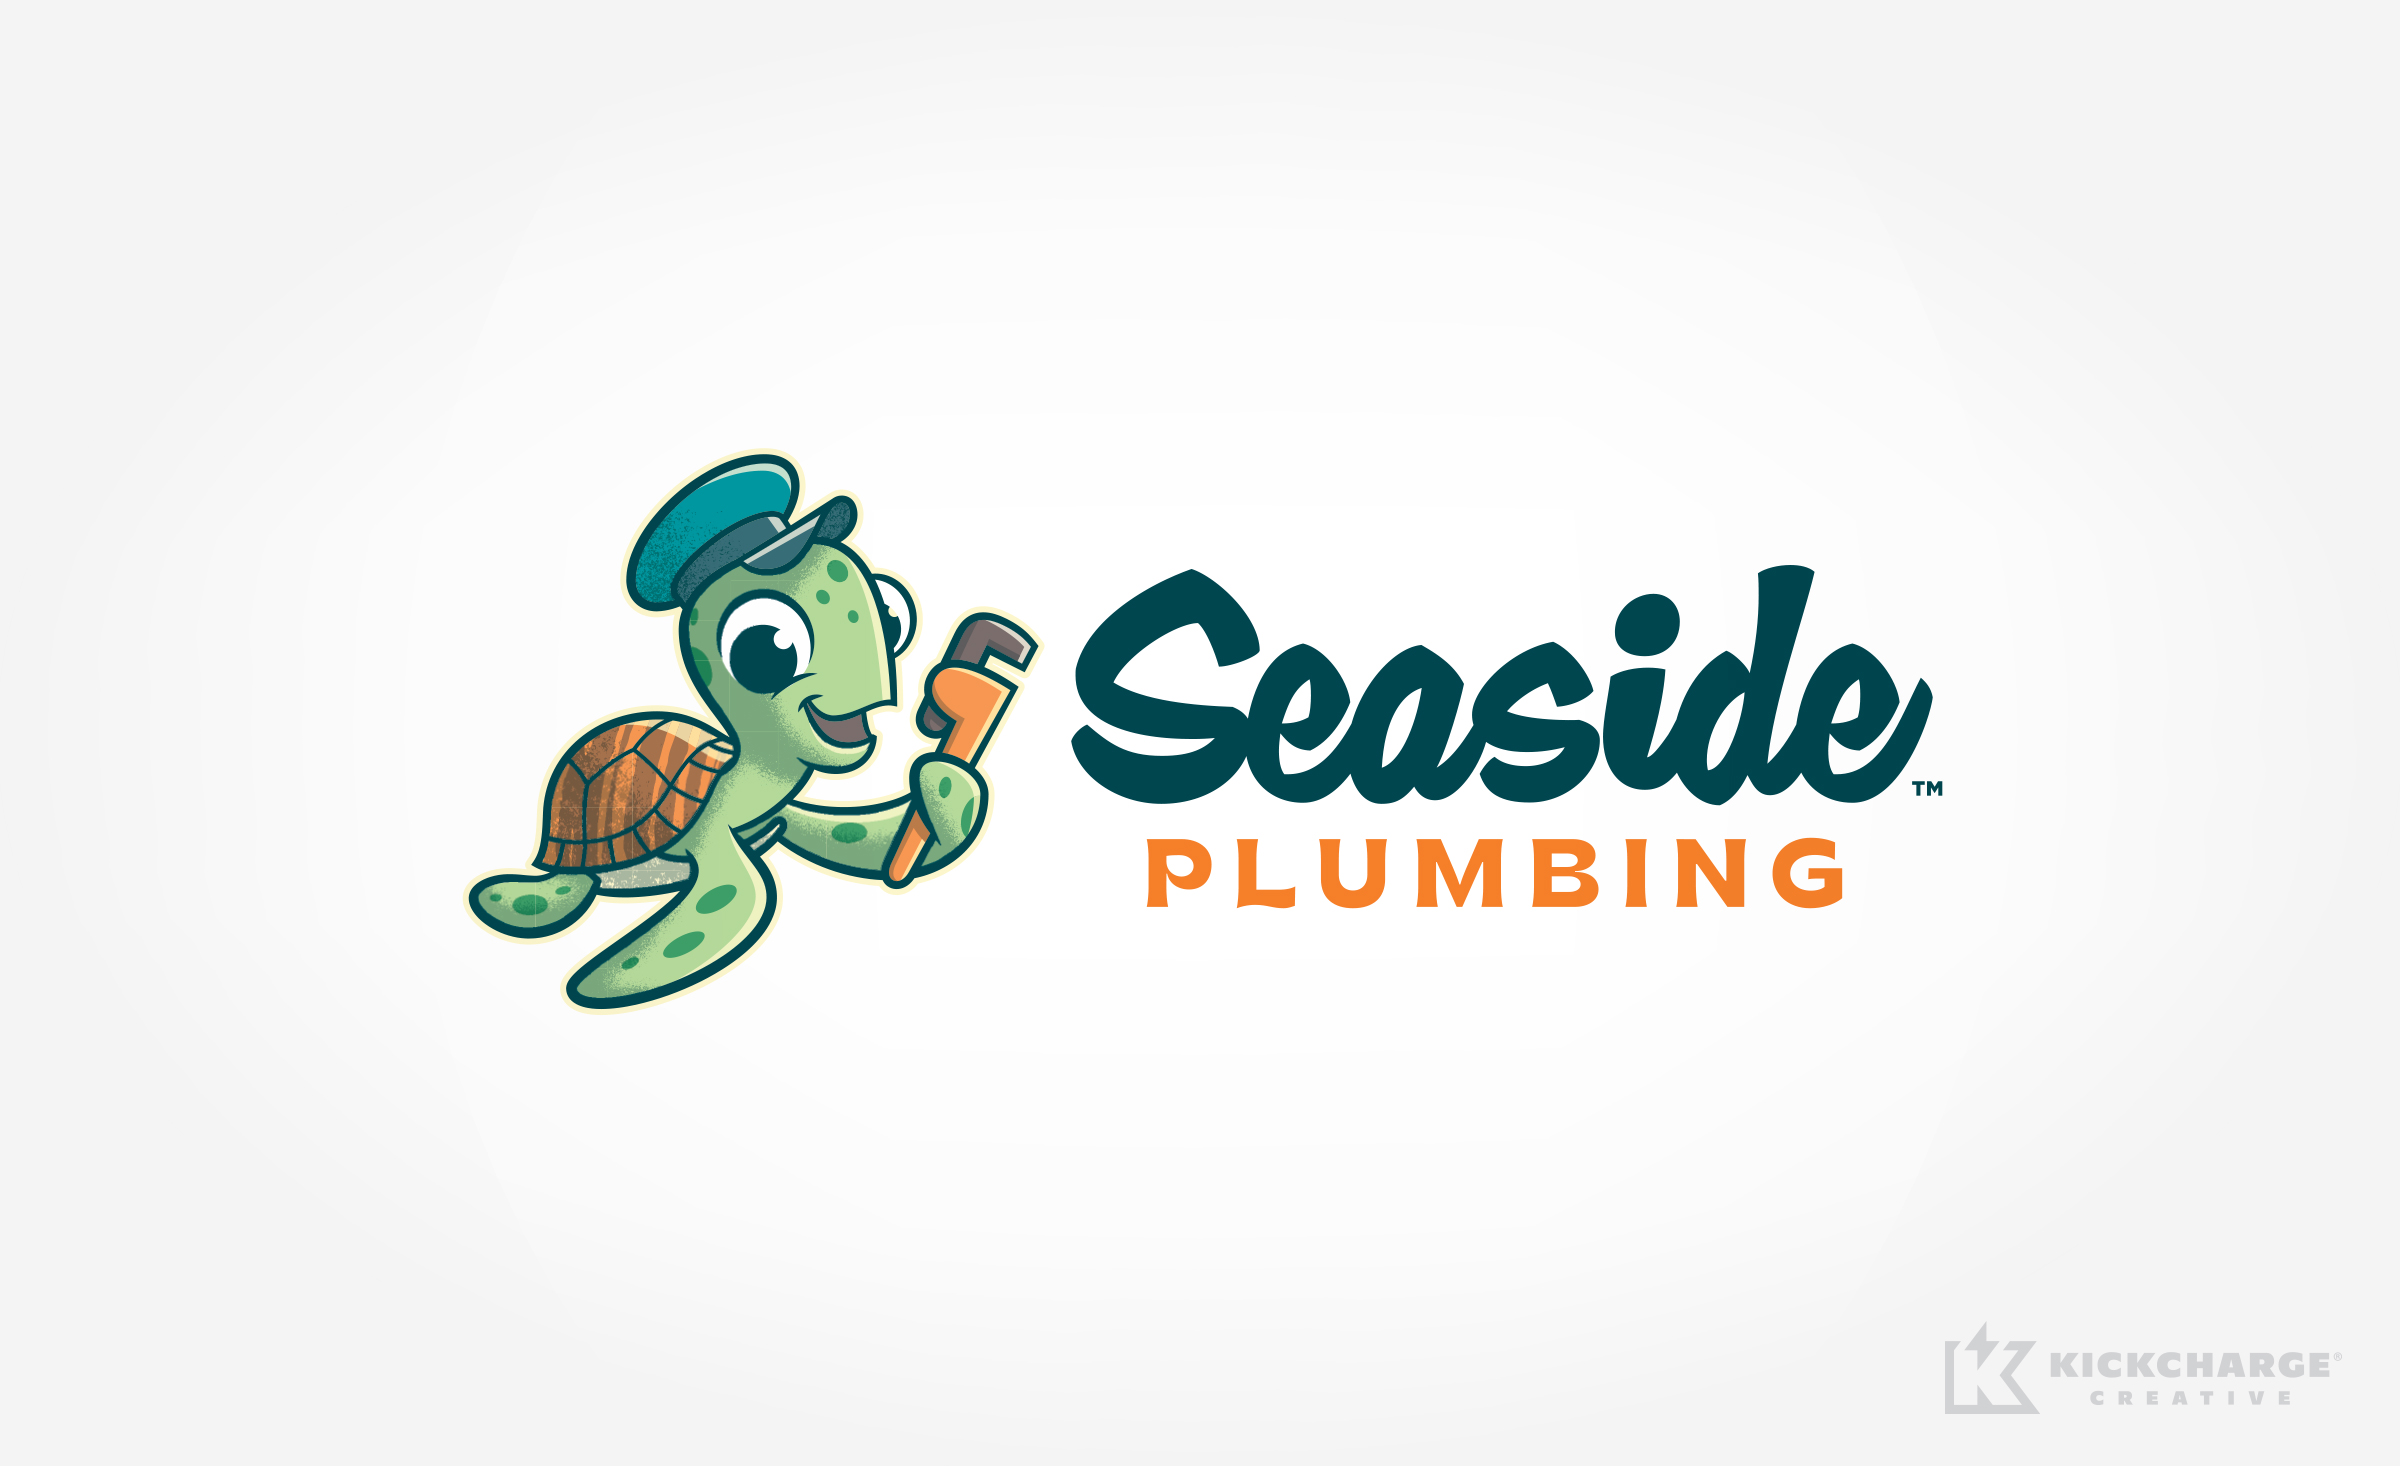 plumbing logo for Seaside Plumbing